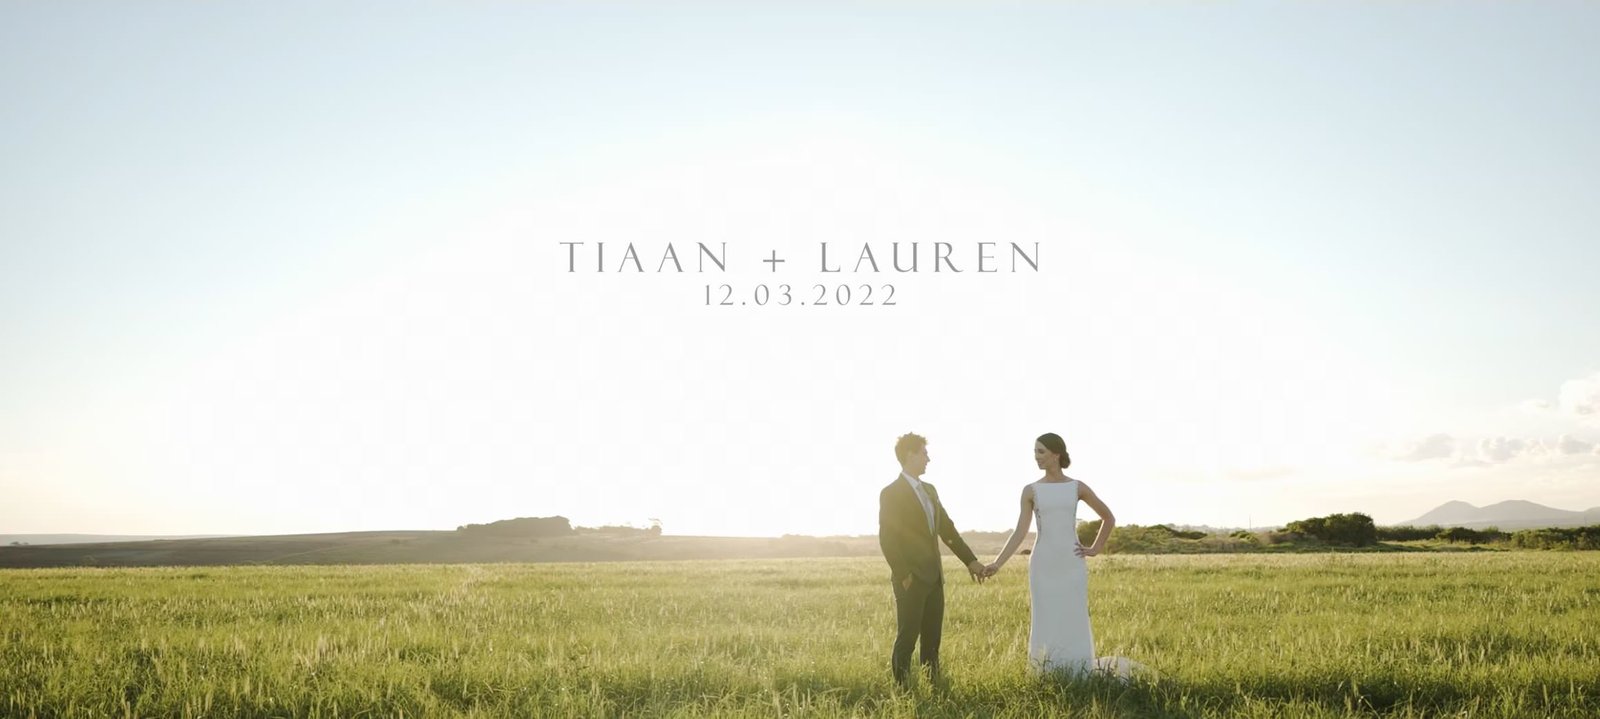 Tiaan + Lauren